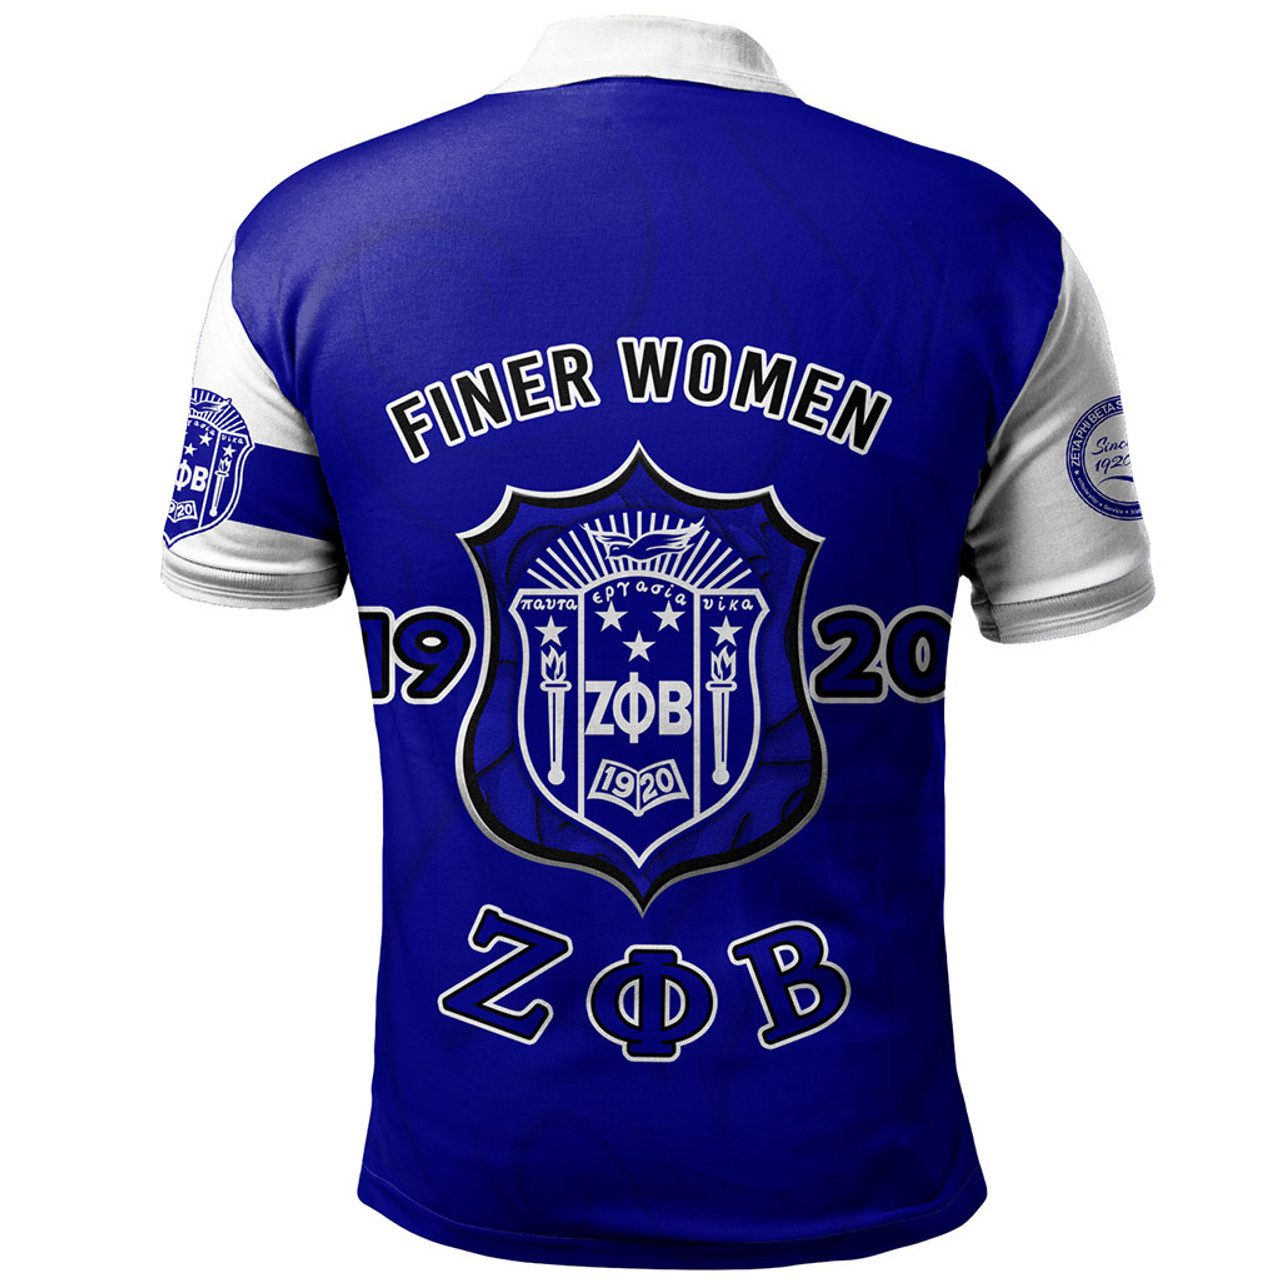 Zeta Phi Beta Polo Shirt Motto